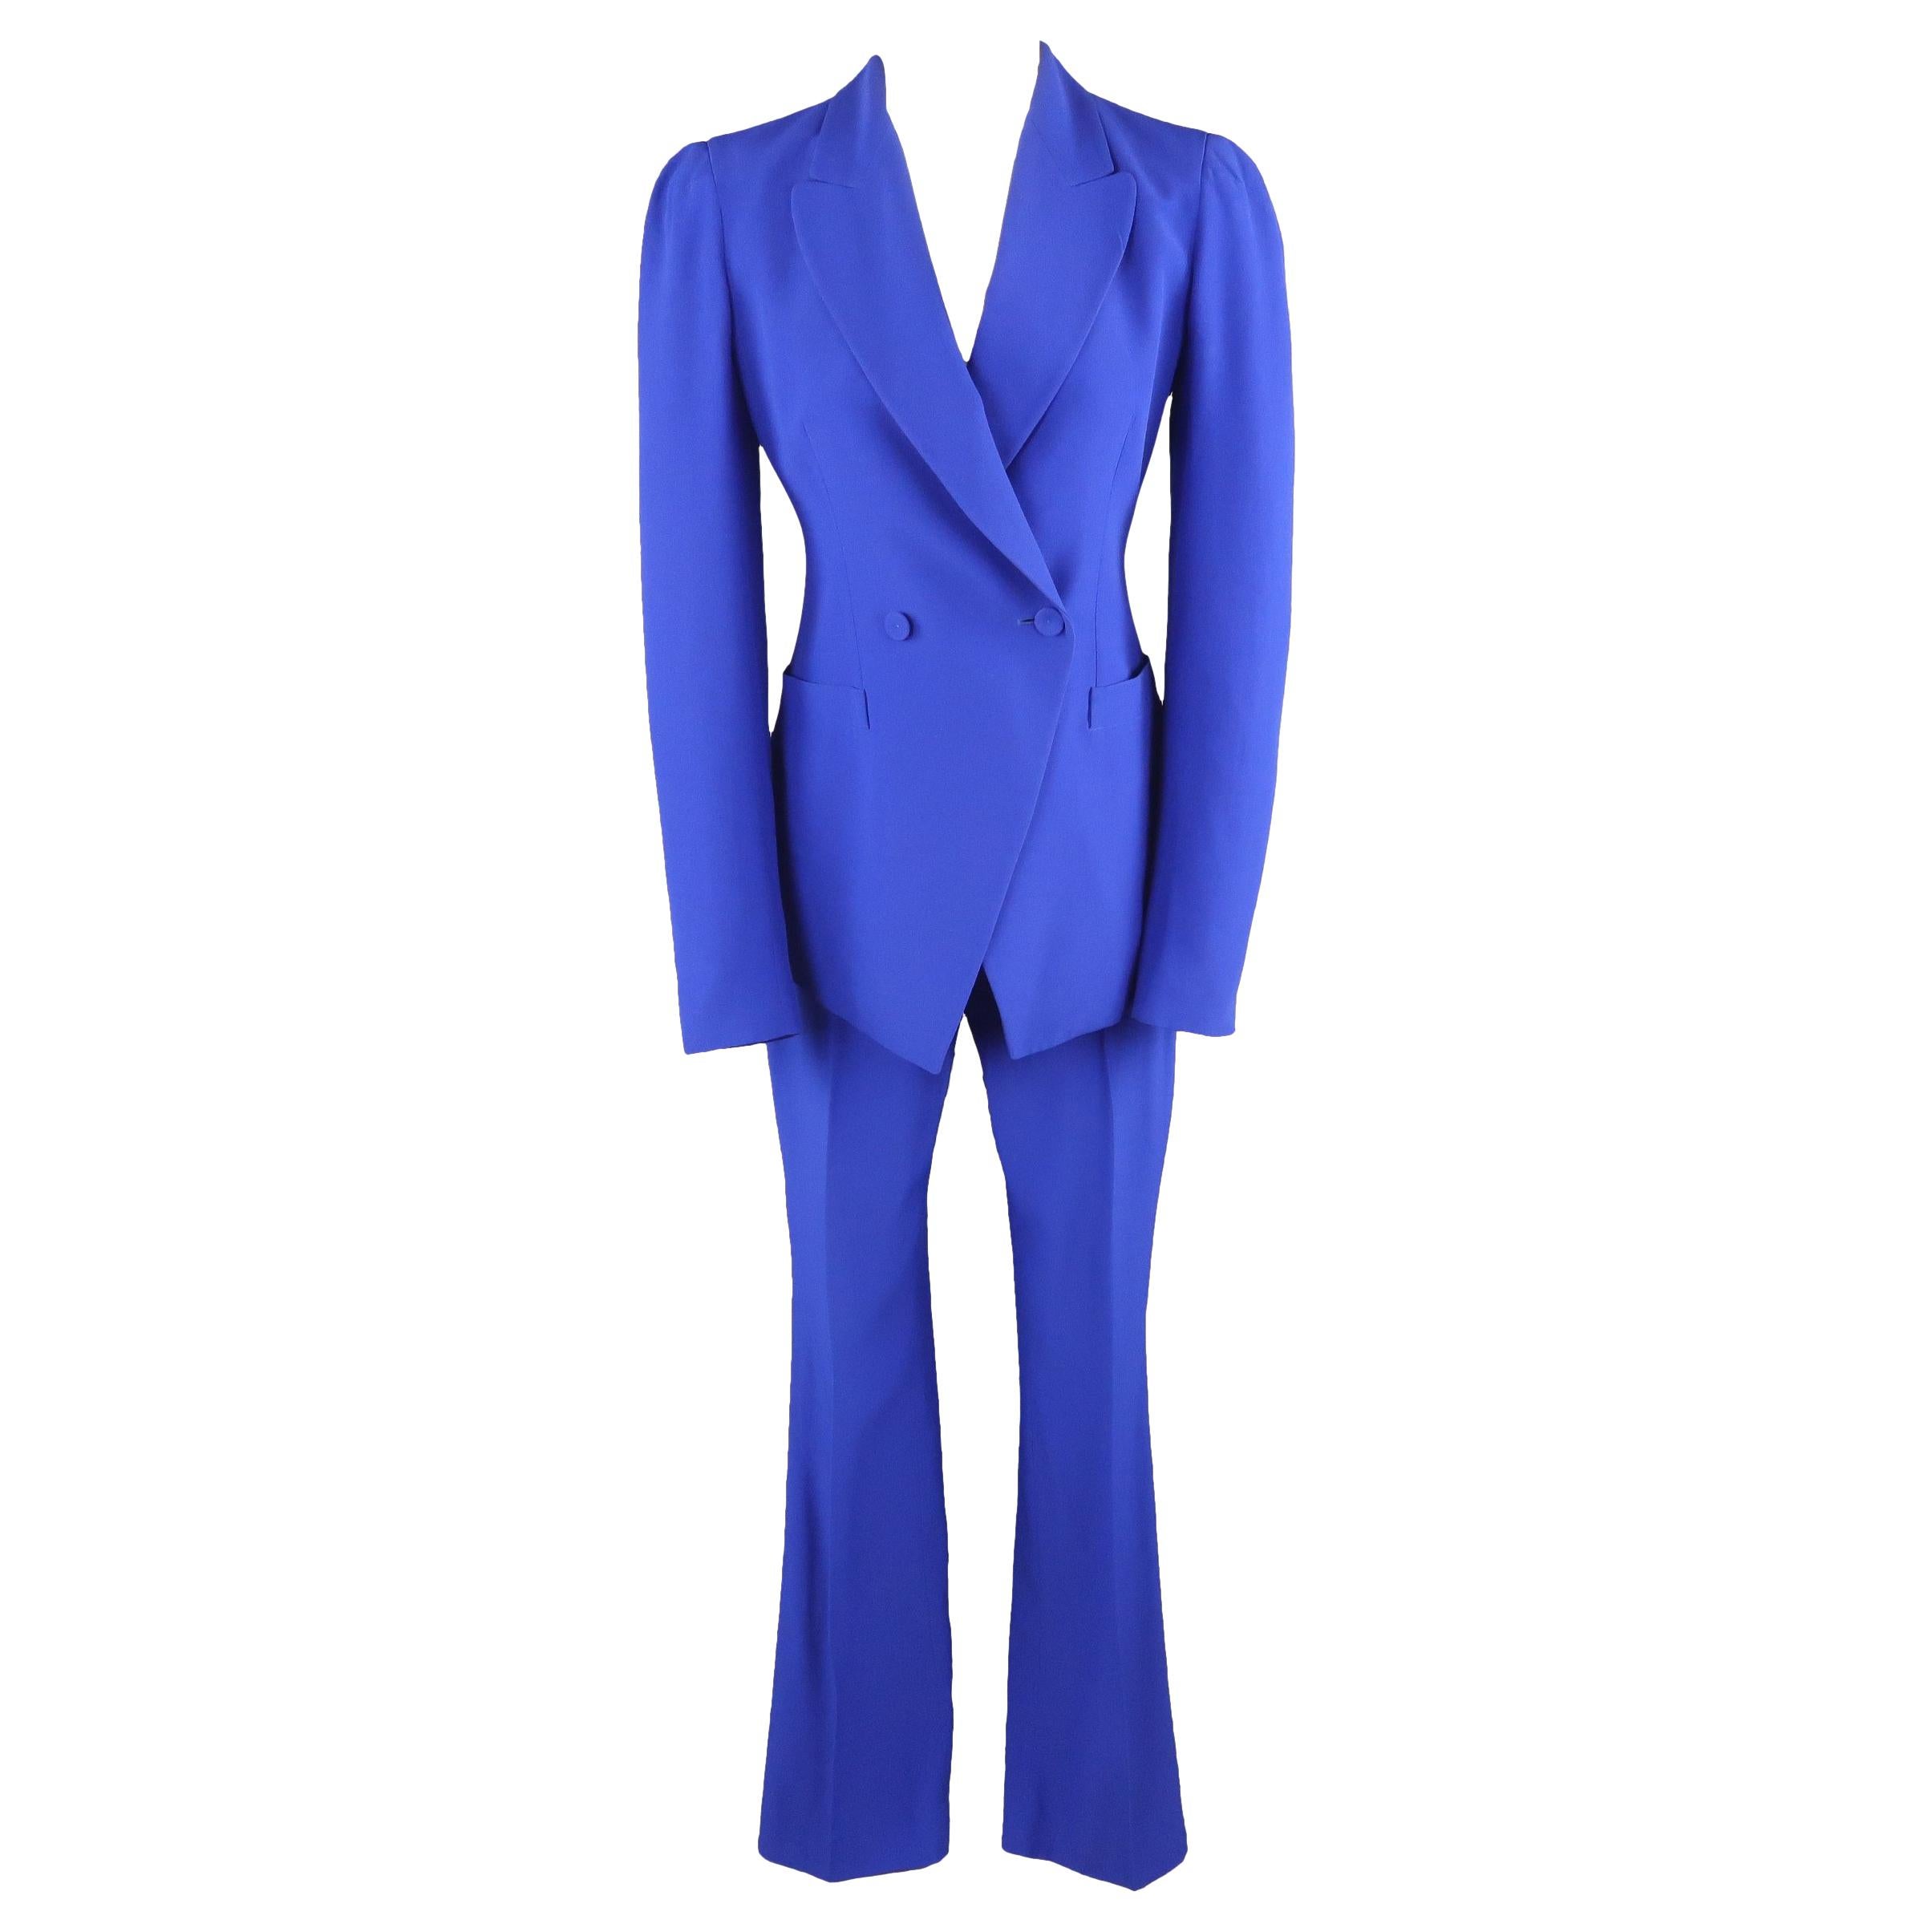 ALEXANDER MCQUEEN Size 6 Cobalt Blue Double Breasted Peak Lapel Pants Suit